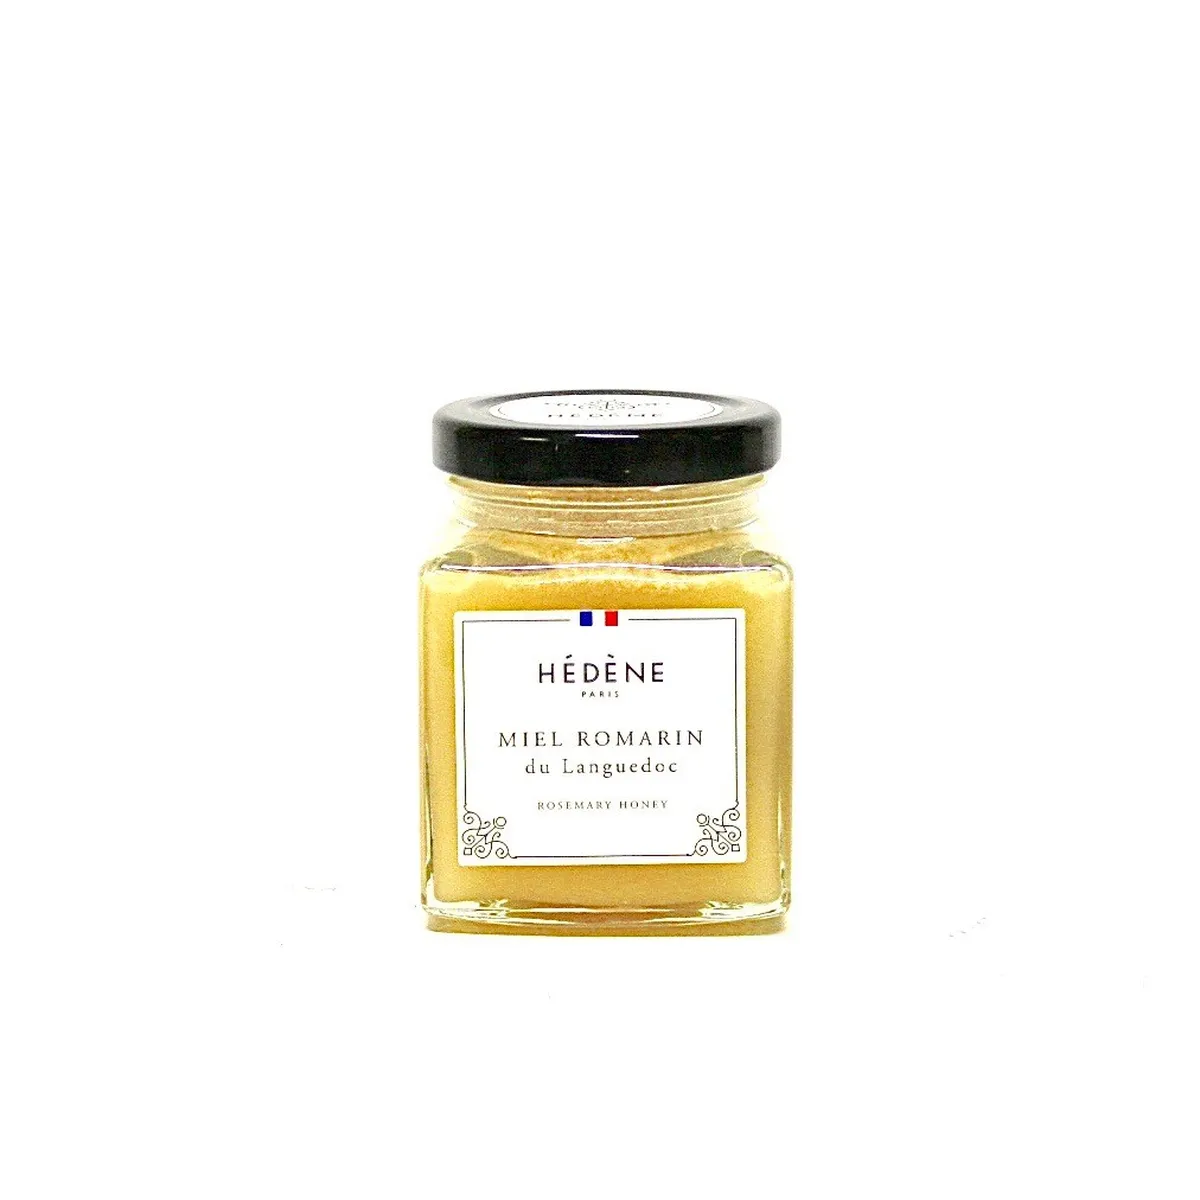 France hedene rosemary honey 250g